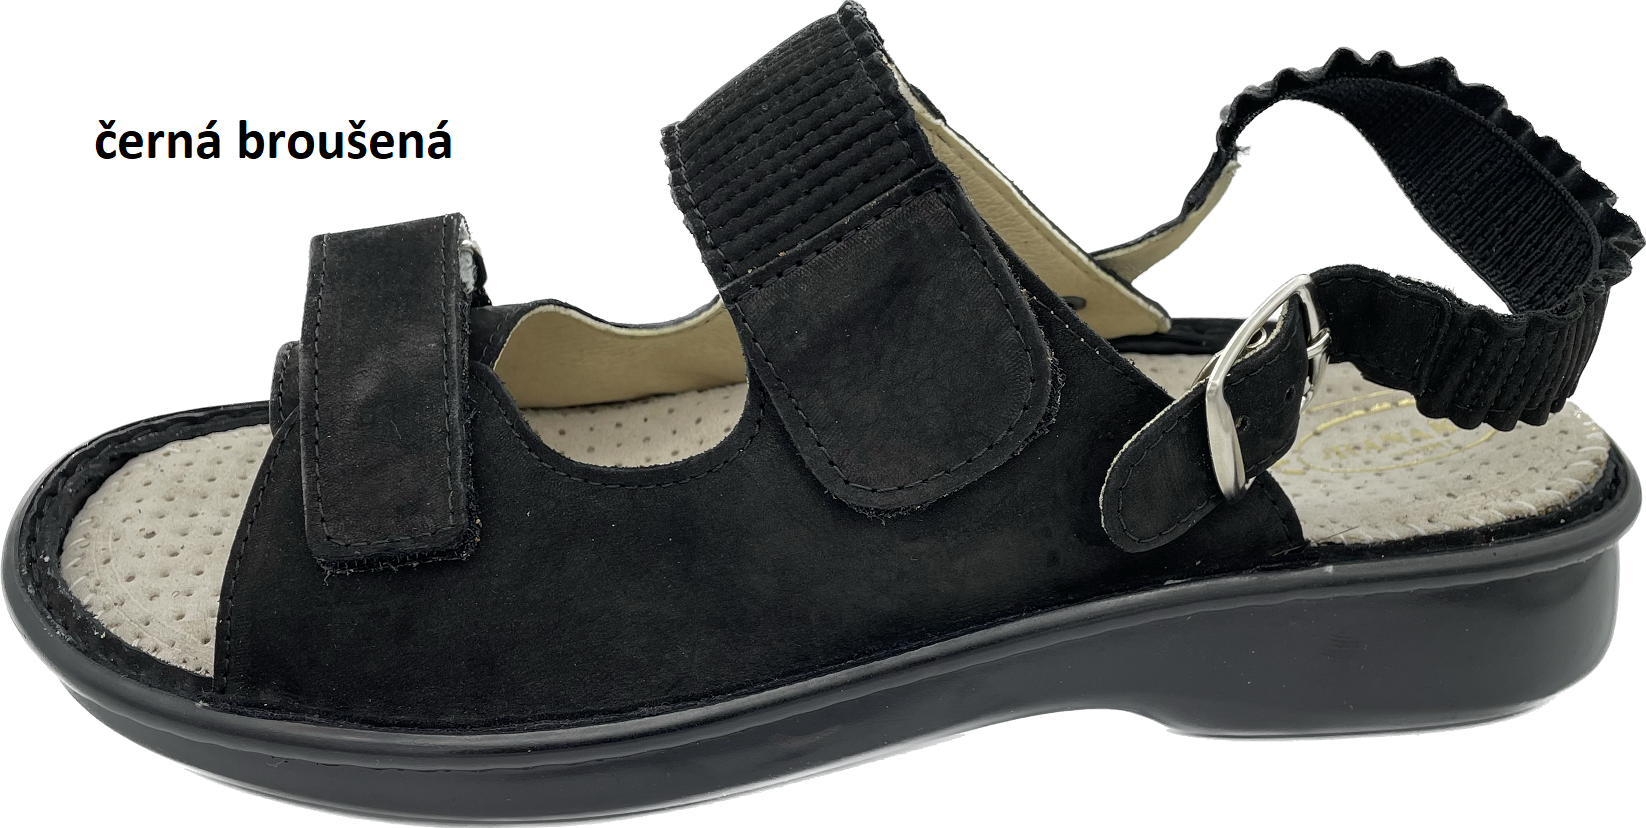 Boty Hanák vzor 418 P - černá podešev Barva usně: černá broušená, Velikosti obuvi: 43